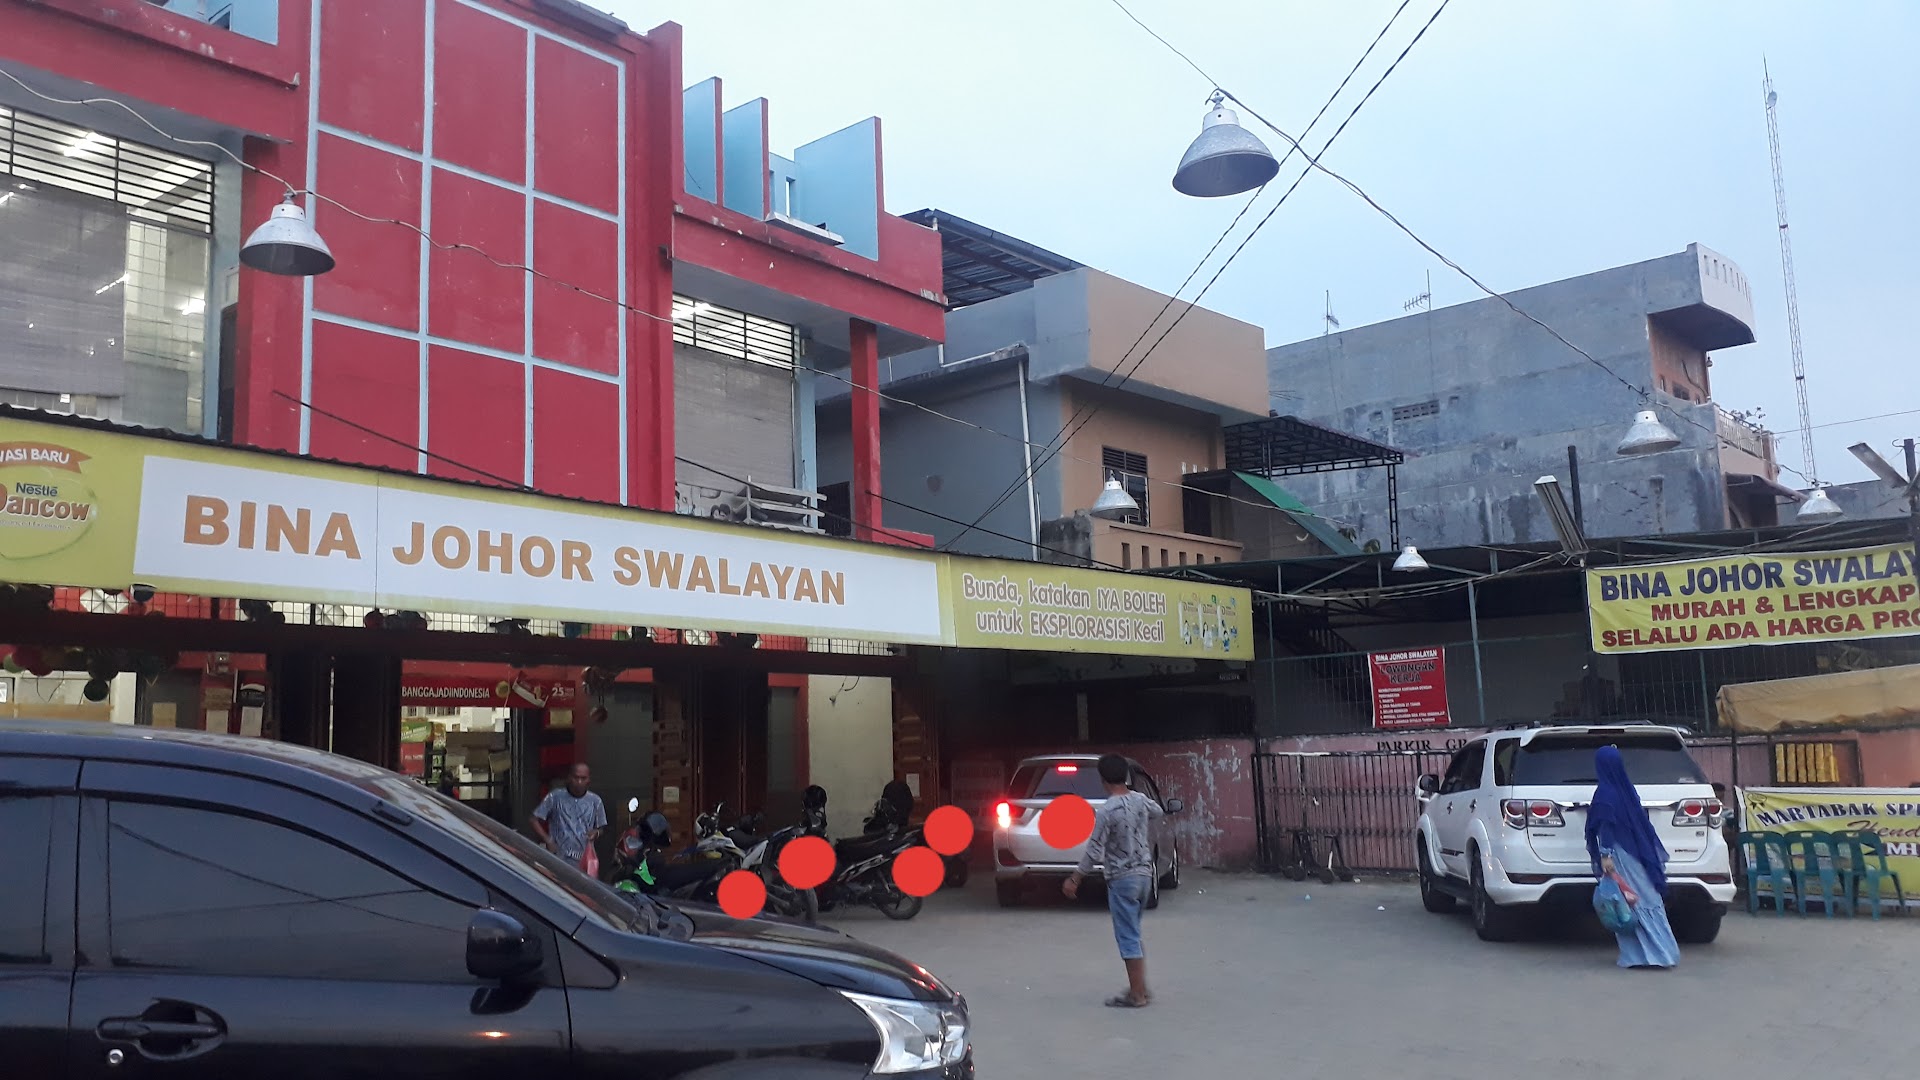 Bina Johor Swalayan Photo